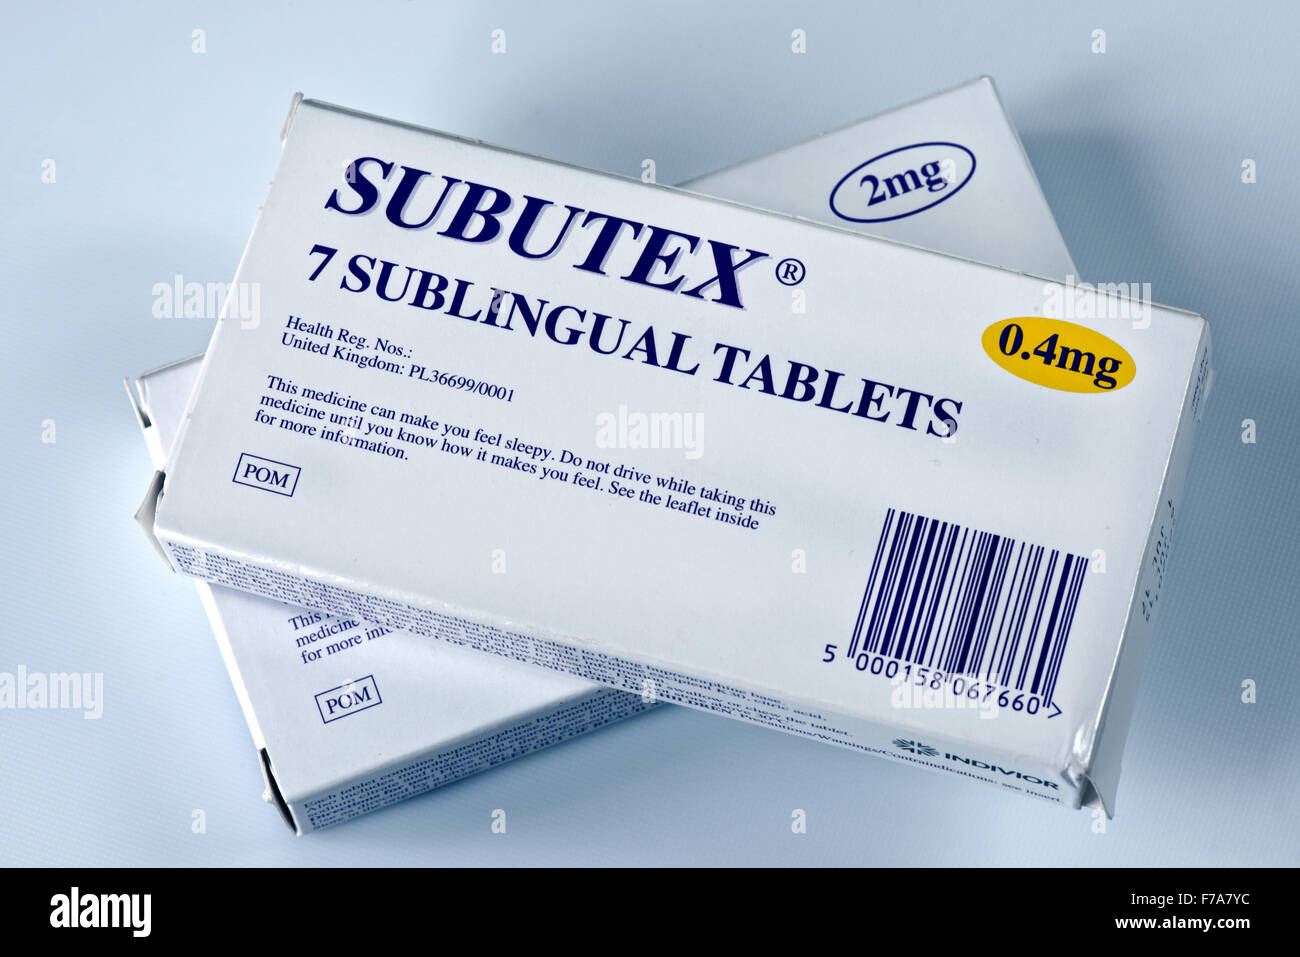 Le Subutex est une marque nom donné par l'entreprise pharmaceutique qui la produit. Un modérateur d'opium qui contient la buprénorphine. Banque D'Images